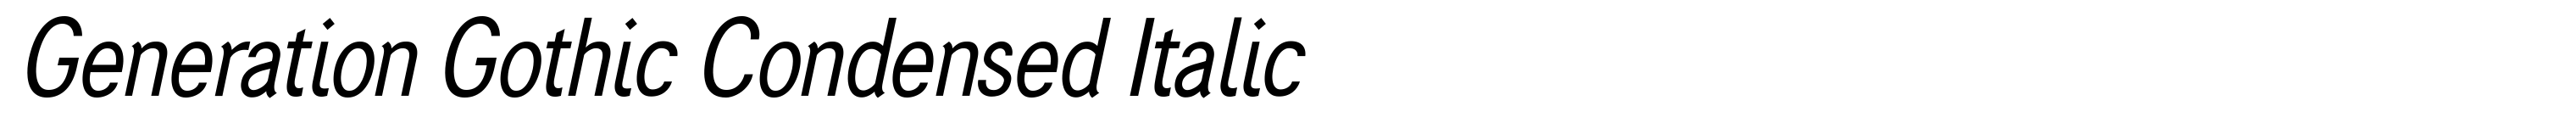 Generation Gothic Condensed Italic